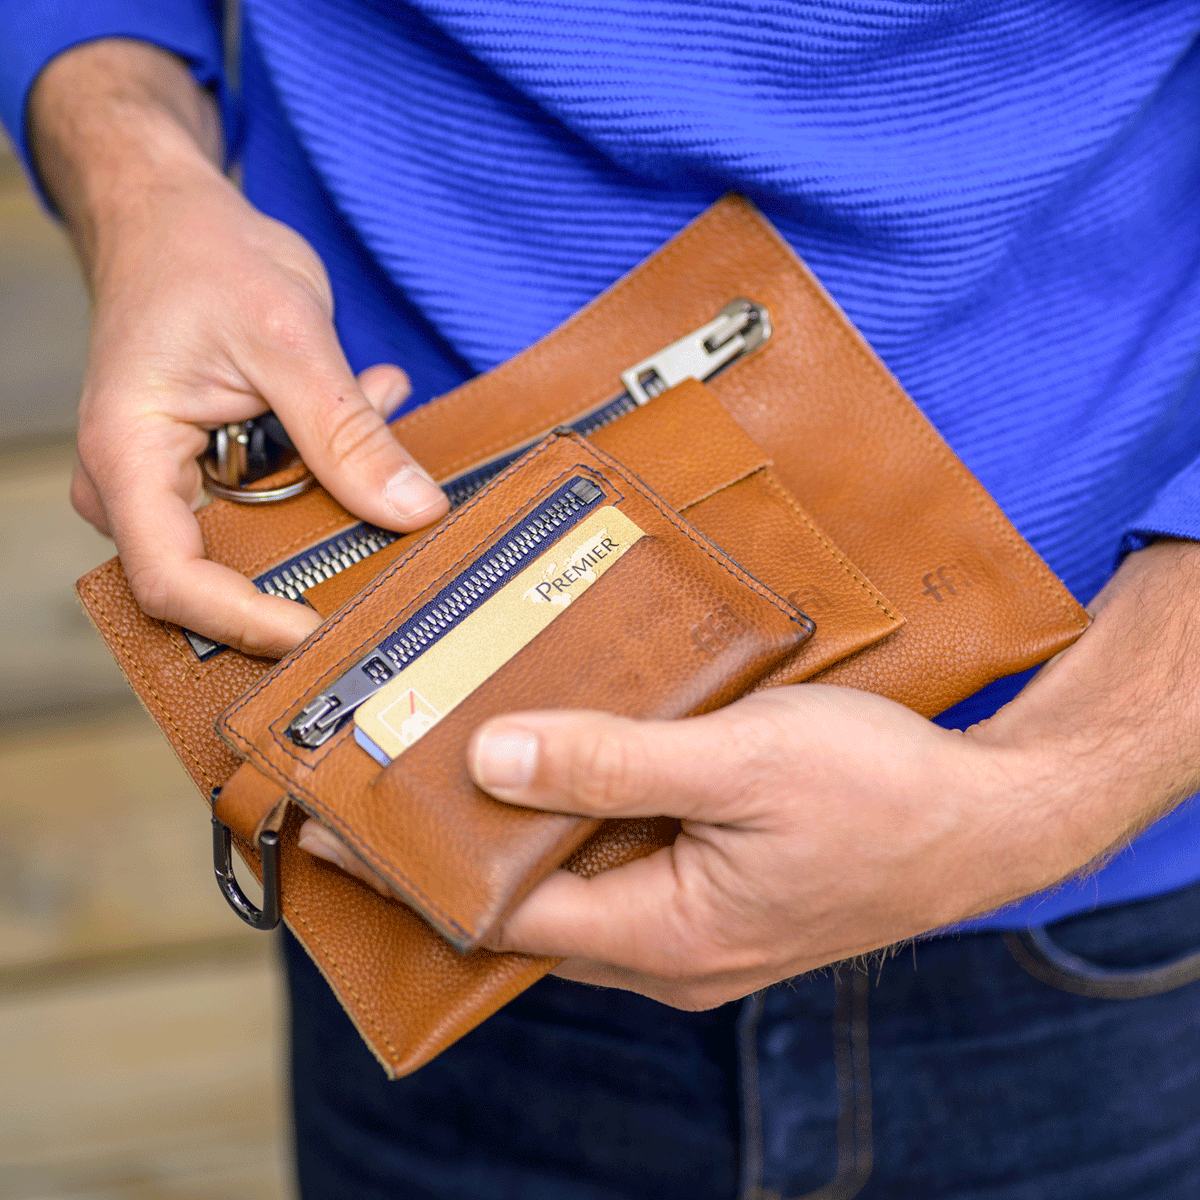 Porte papiers hommes - FFIL - Sac et accessoires en cuir fabriqués en France 